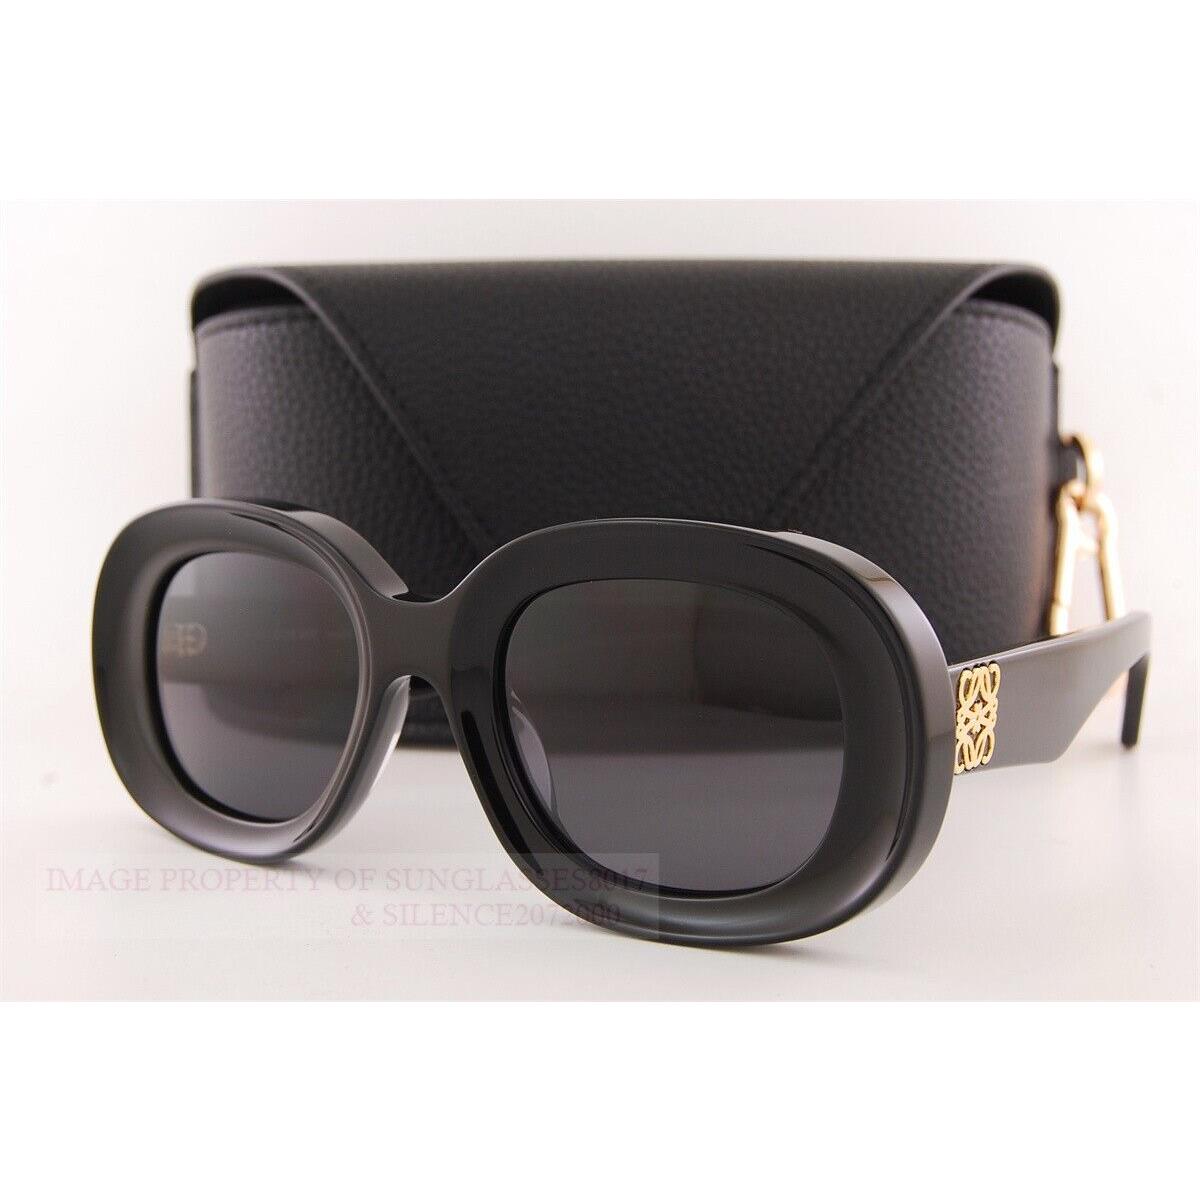 Loewe sunglasses  - Black Frame, Gray Lens